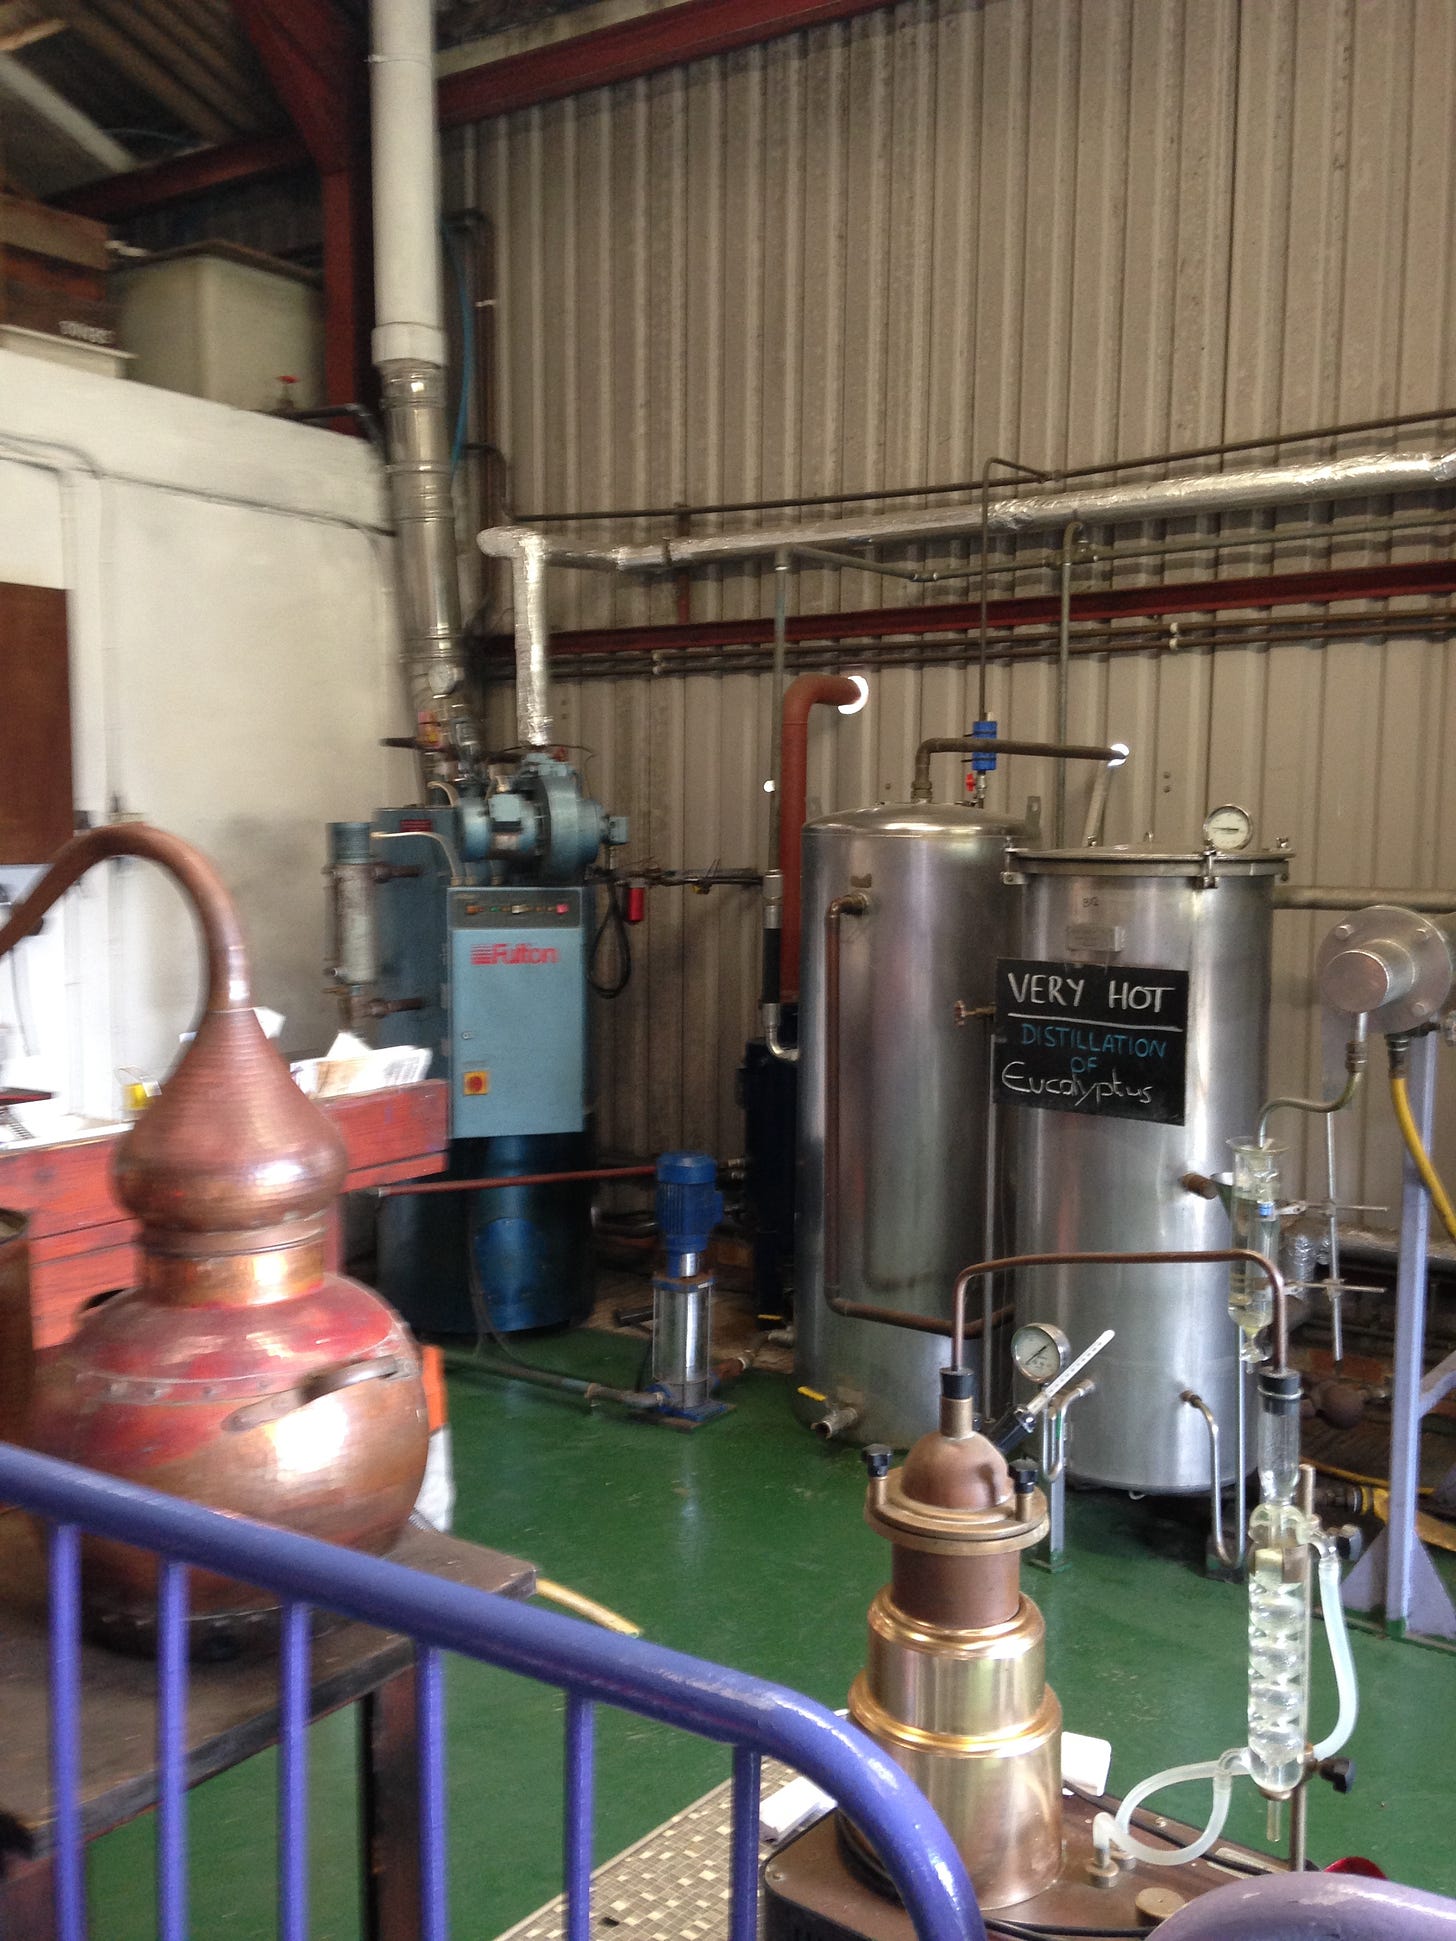 Jersey Lavender distilling equipment.